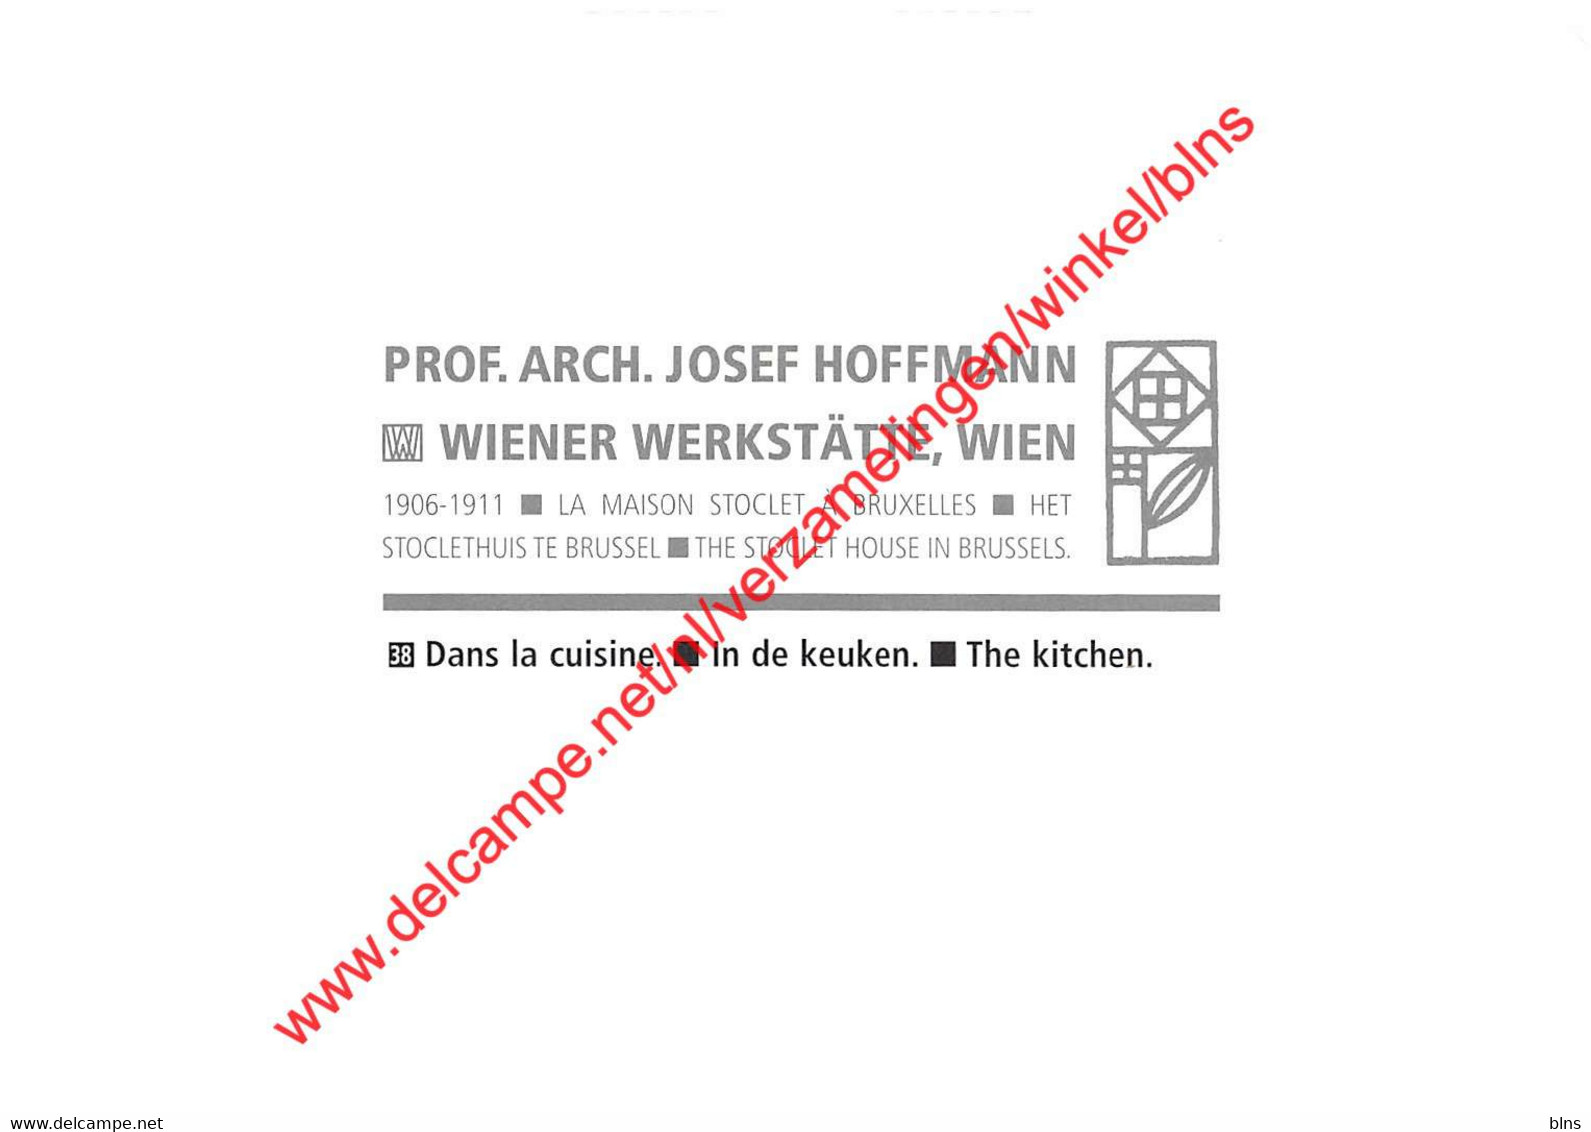 Maison Stoclet - Arch Josef Hoffmann - Dans La Cuisine - St-Pieters-Woluwe - Woluwe-St-Pierre - Woluwe-St-Pierre - St-Pieters-Woluwe